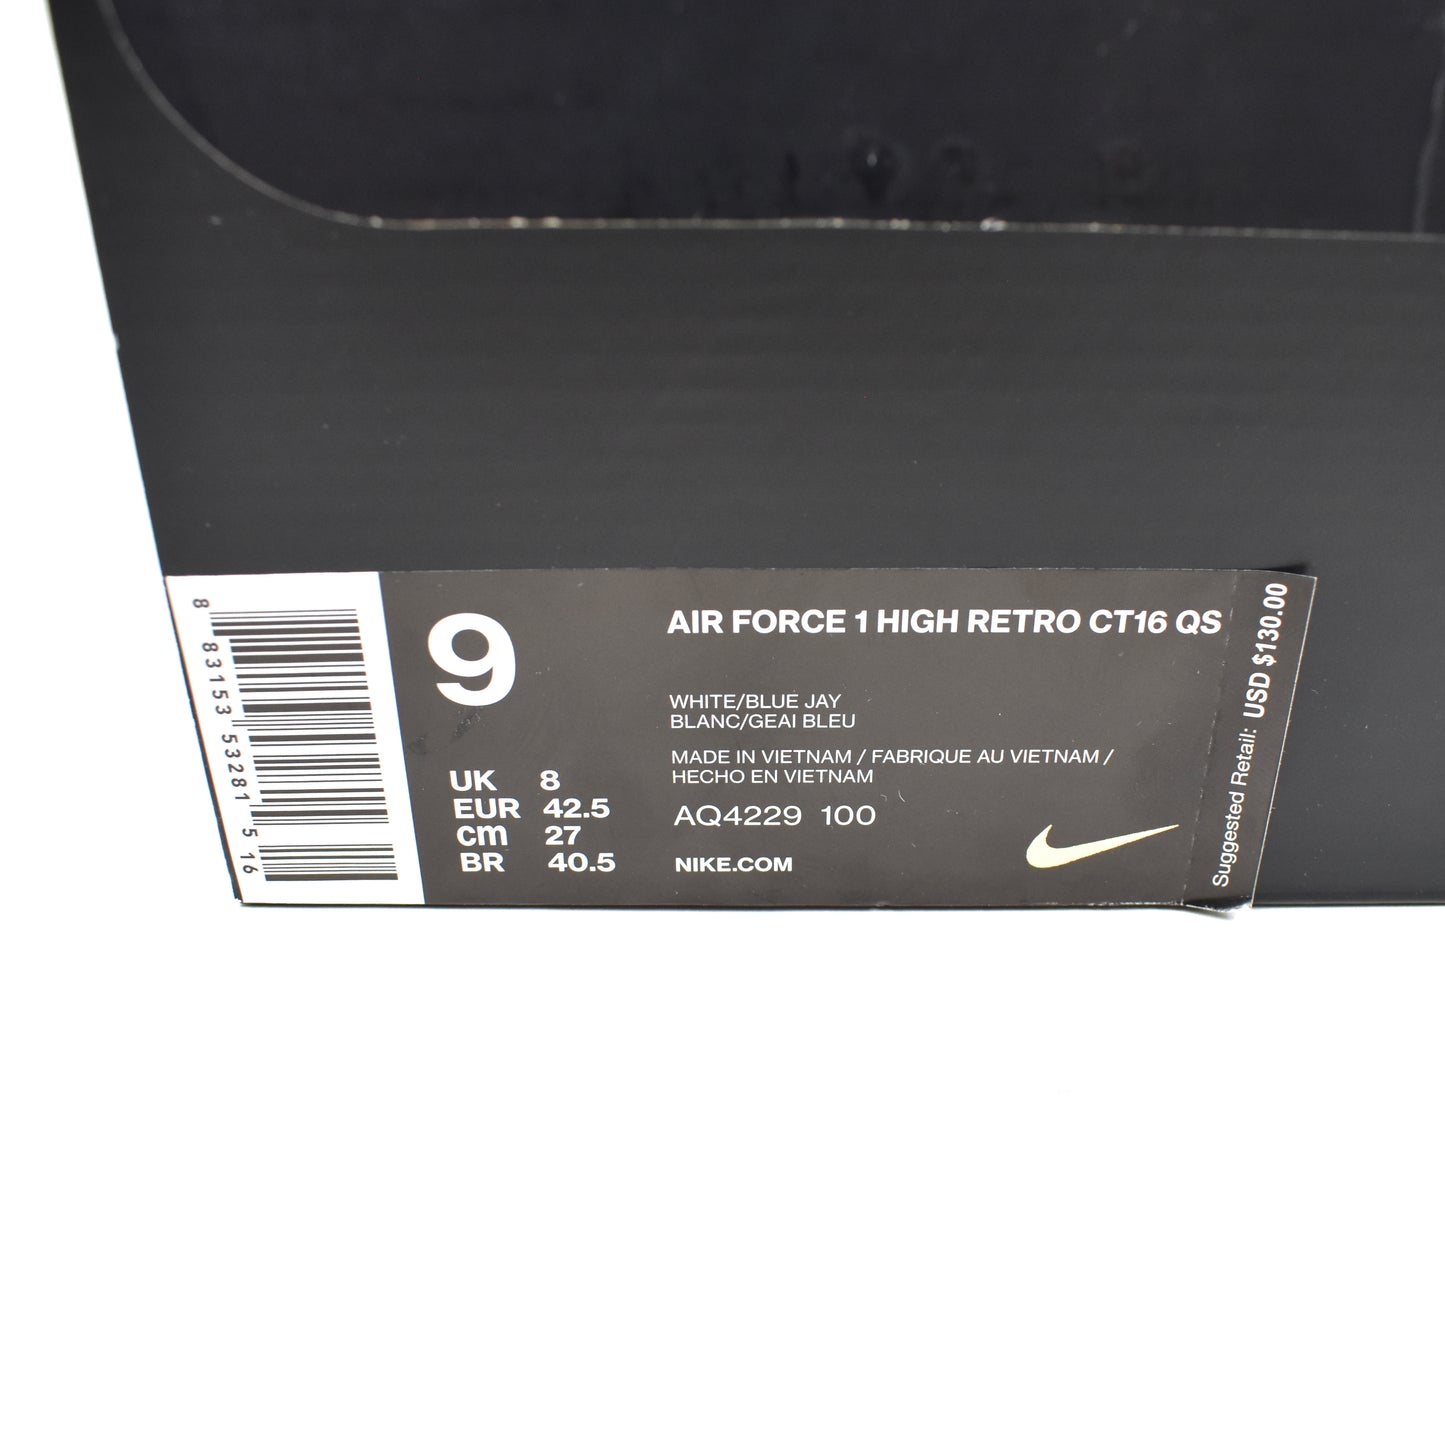 Nike x NBA - Air Force 1 High Retro CT16 QS 'Sheed'